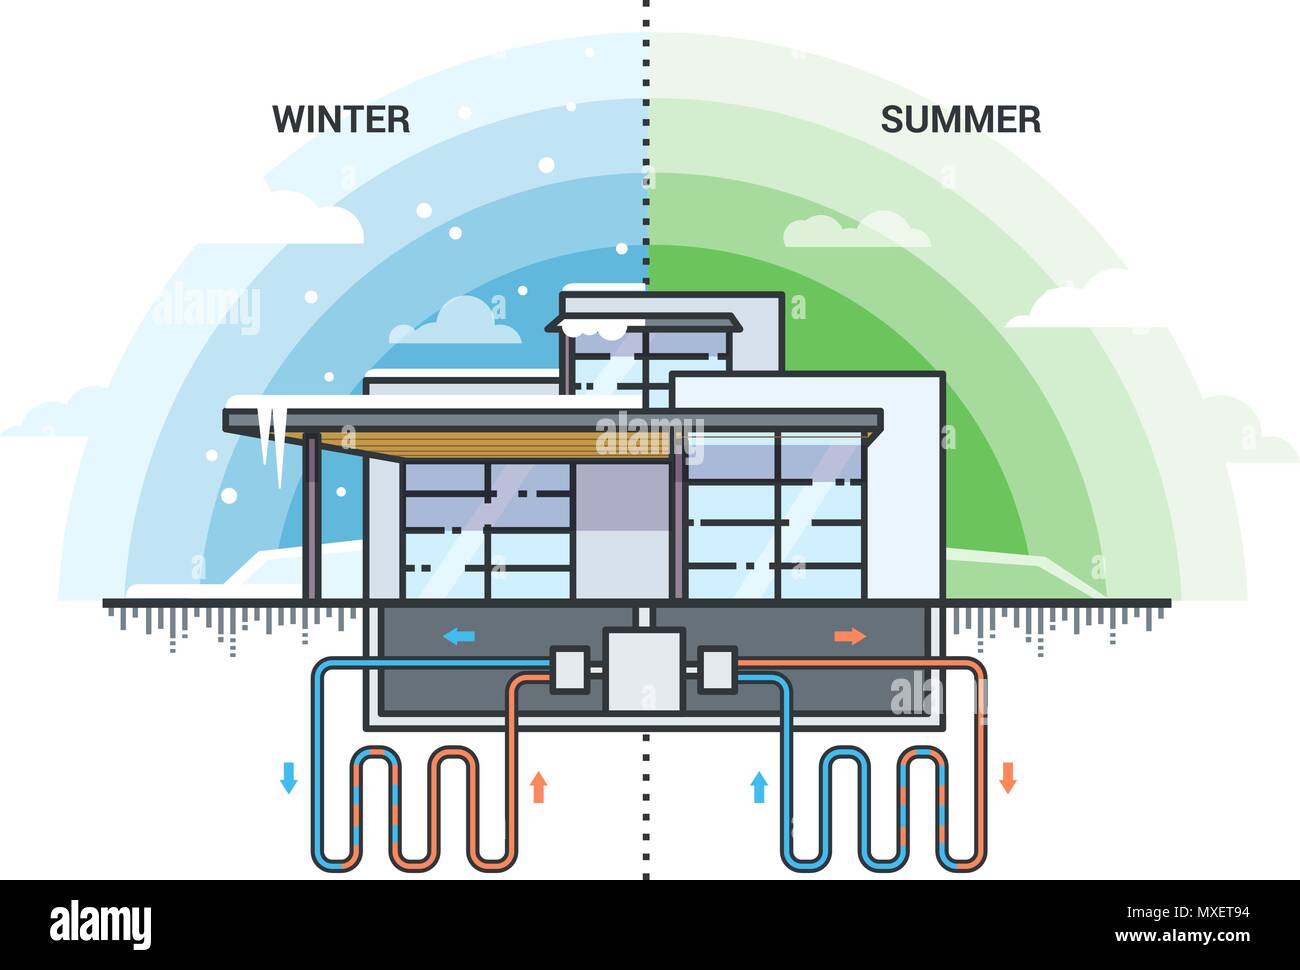 GeotherVector illustrazione della casa moderna con sistema di utilizzo di energia geotermica per riscaldamento. Eco-friendly soluzione geotermica per l'estate e wint Illustrazione Vettoriale